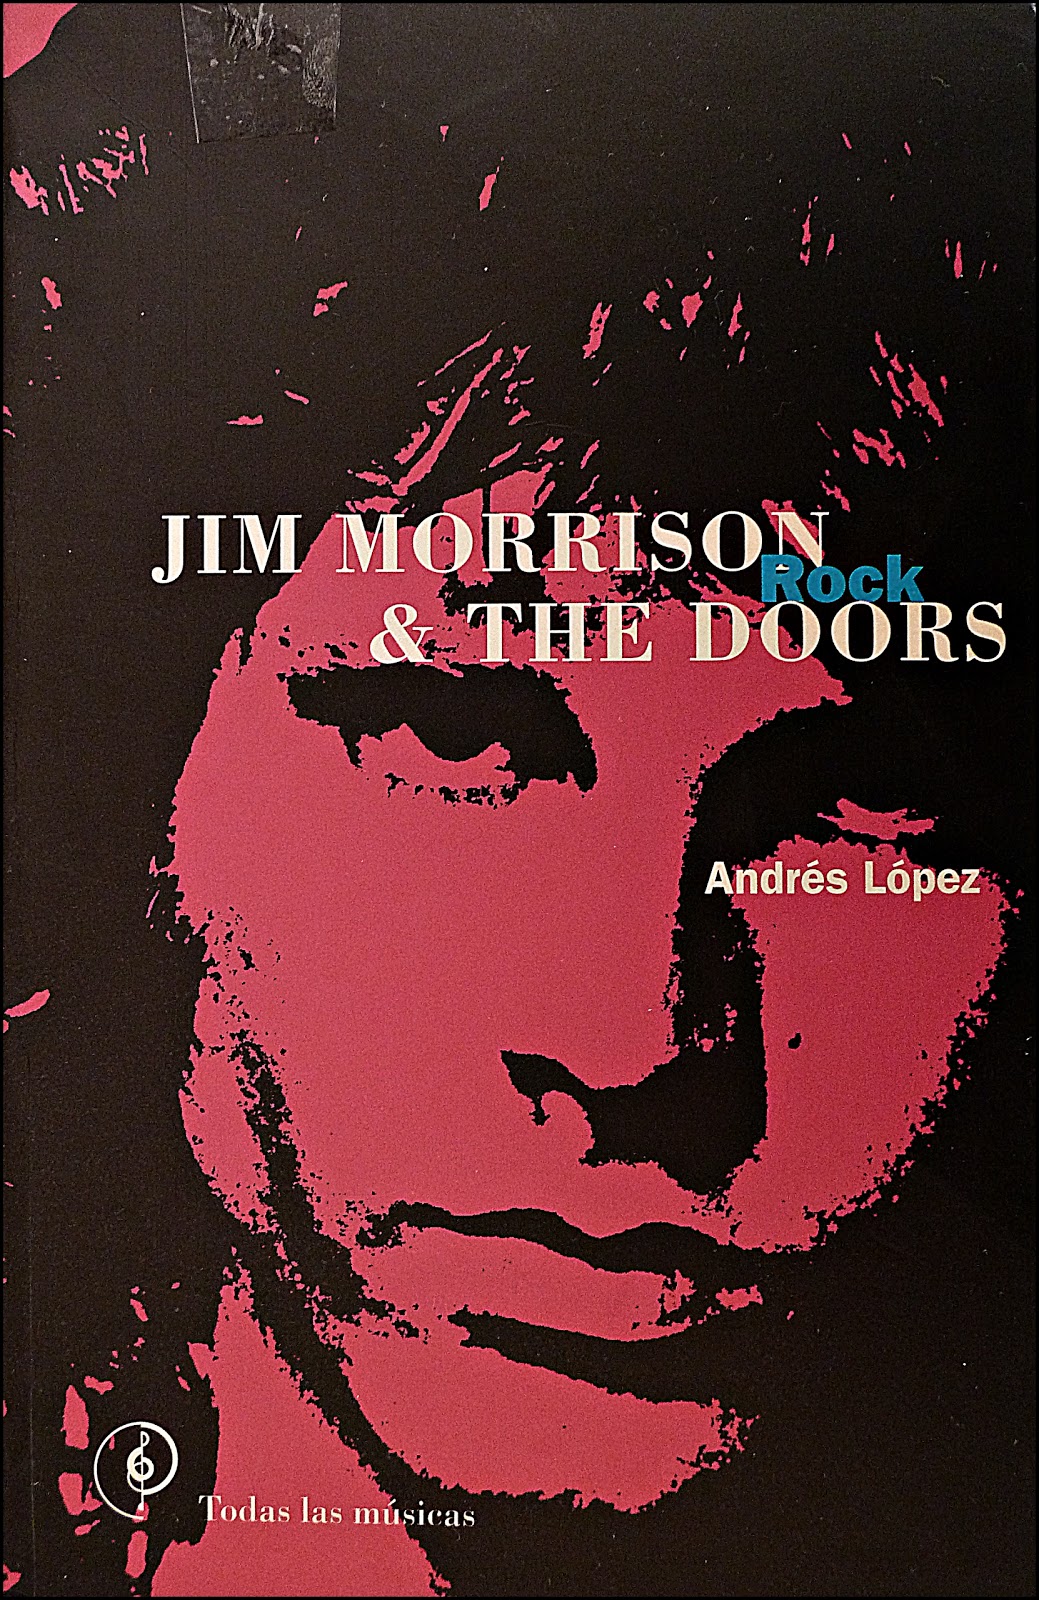 John O'Groats Pub - The Doors foi uma banda de rock psicodélico  norte-americana formada em 1965 em Los Angeles, na Califórnia. O grupo era  composto por Jim Morrison (voz), Ray Manzarek (teclados)